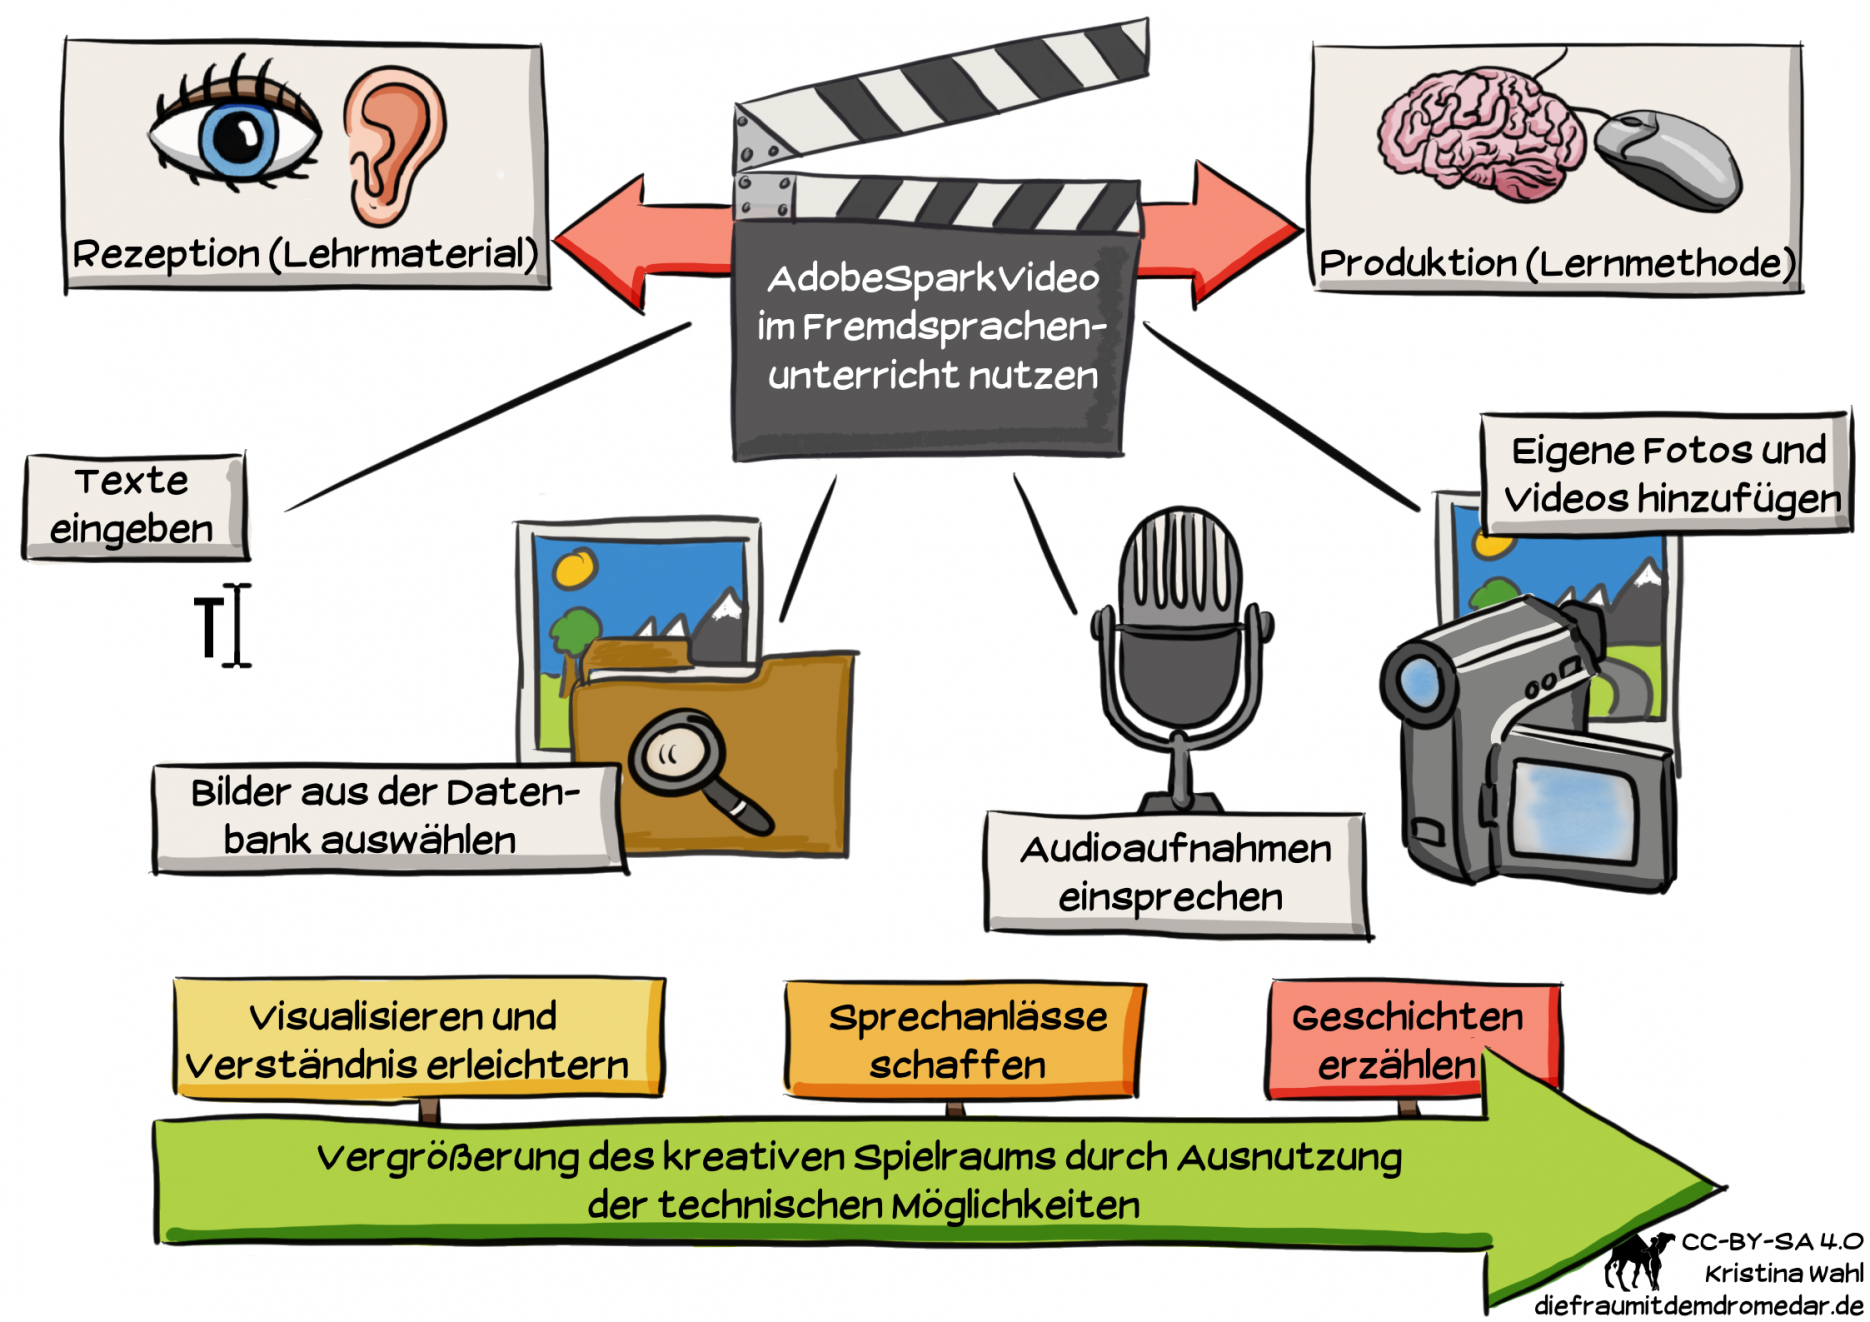 Materialien zur eLecture „AdobeSparkVideo im Unterricht nutzen“